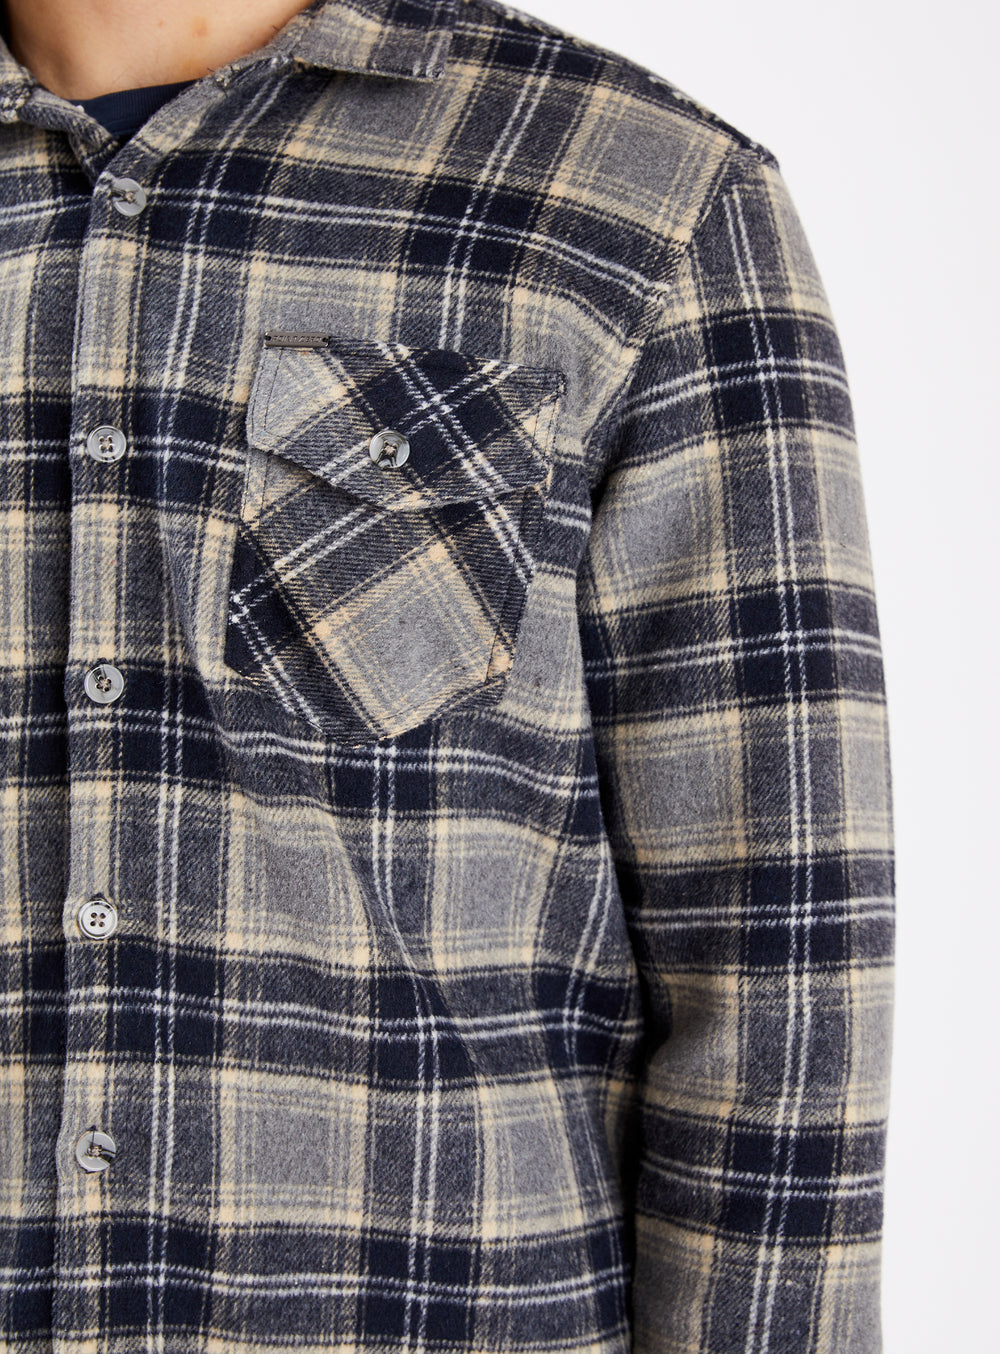 BANFF | Checkered Flannel/Polar Fleece double sided Overshirt||BANFF | Surchemise double face en flanelle et polaire à carreaux